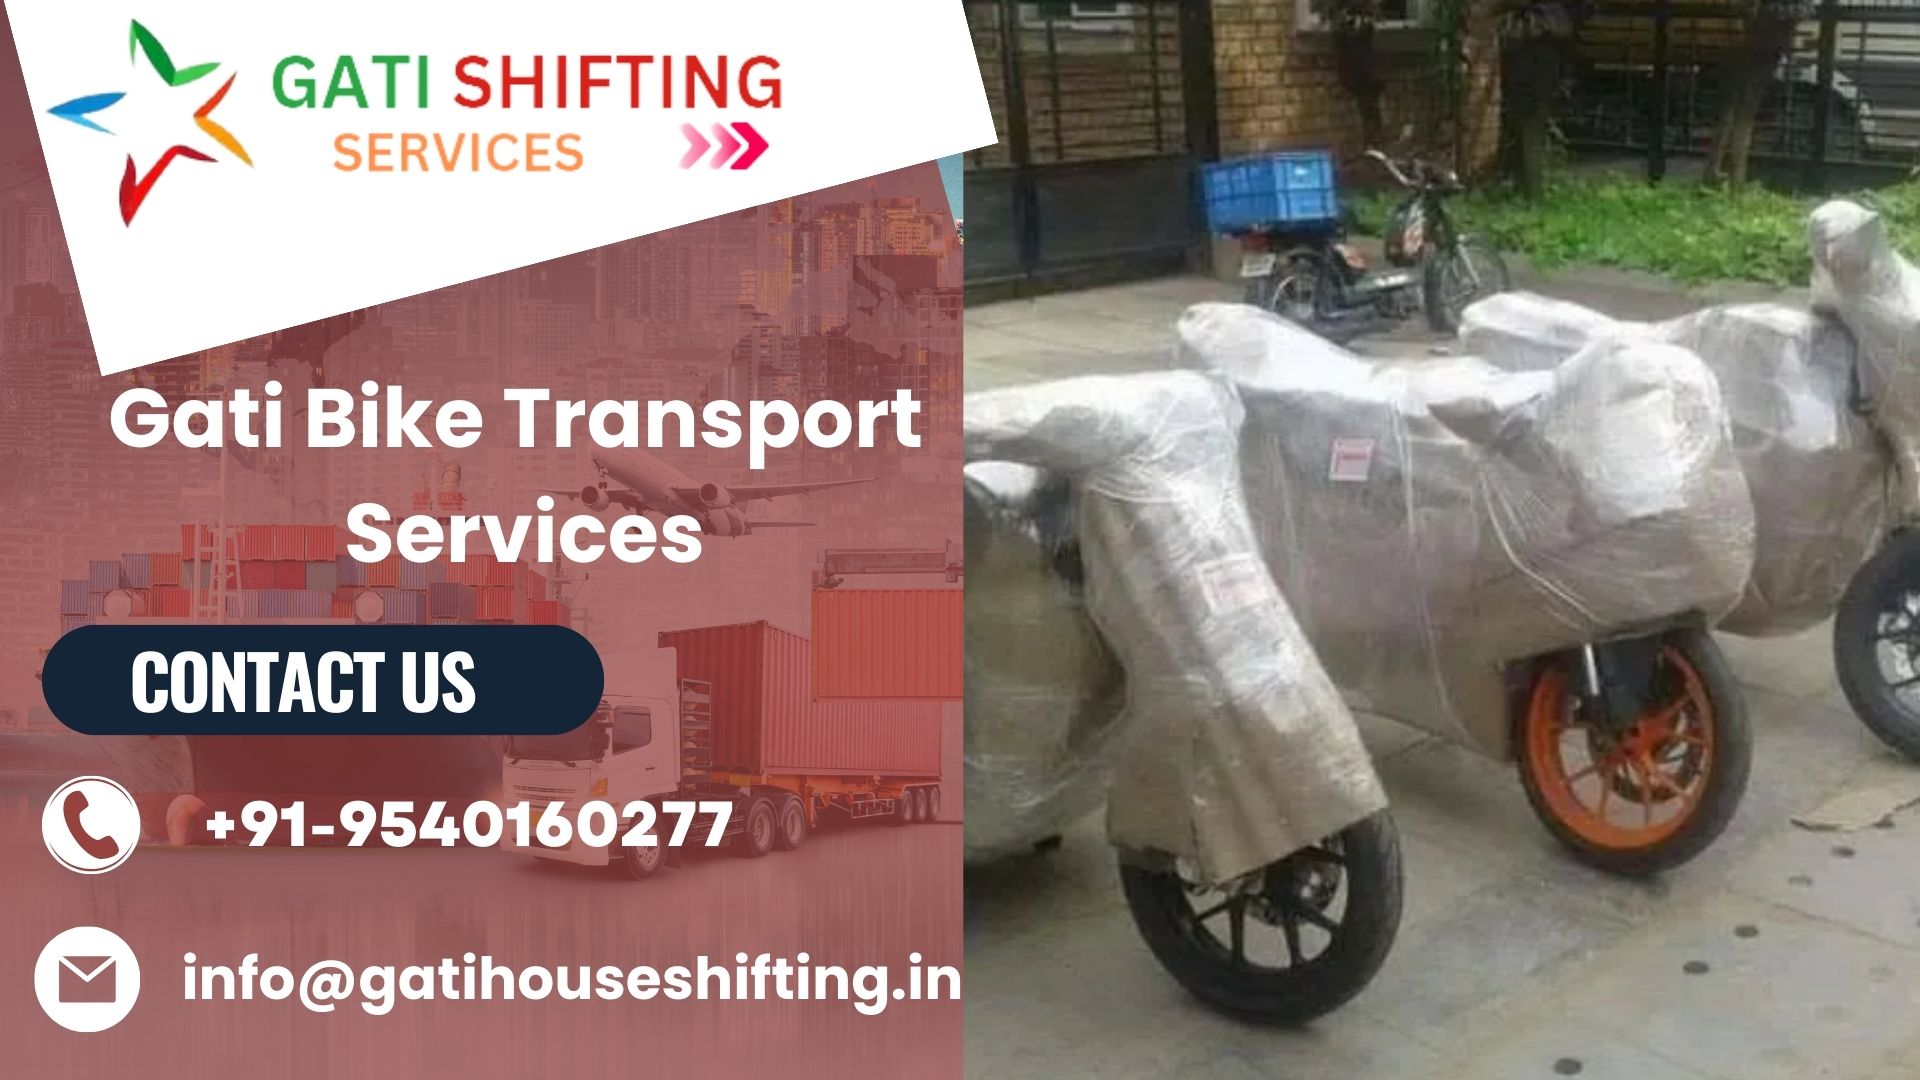 Gati bike transport service in Kochi